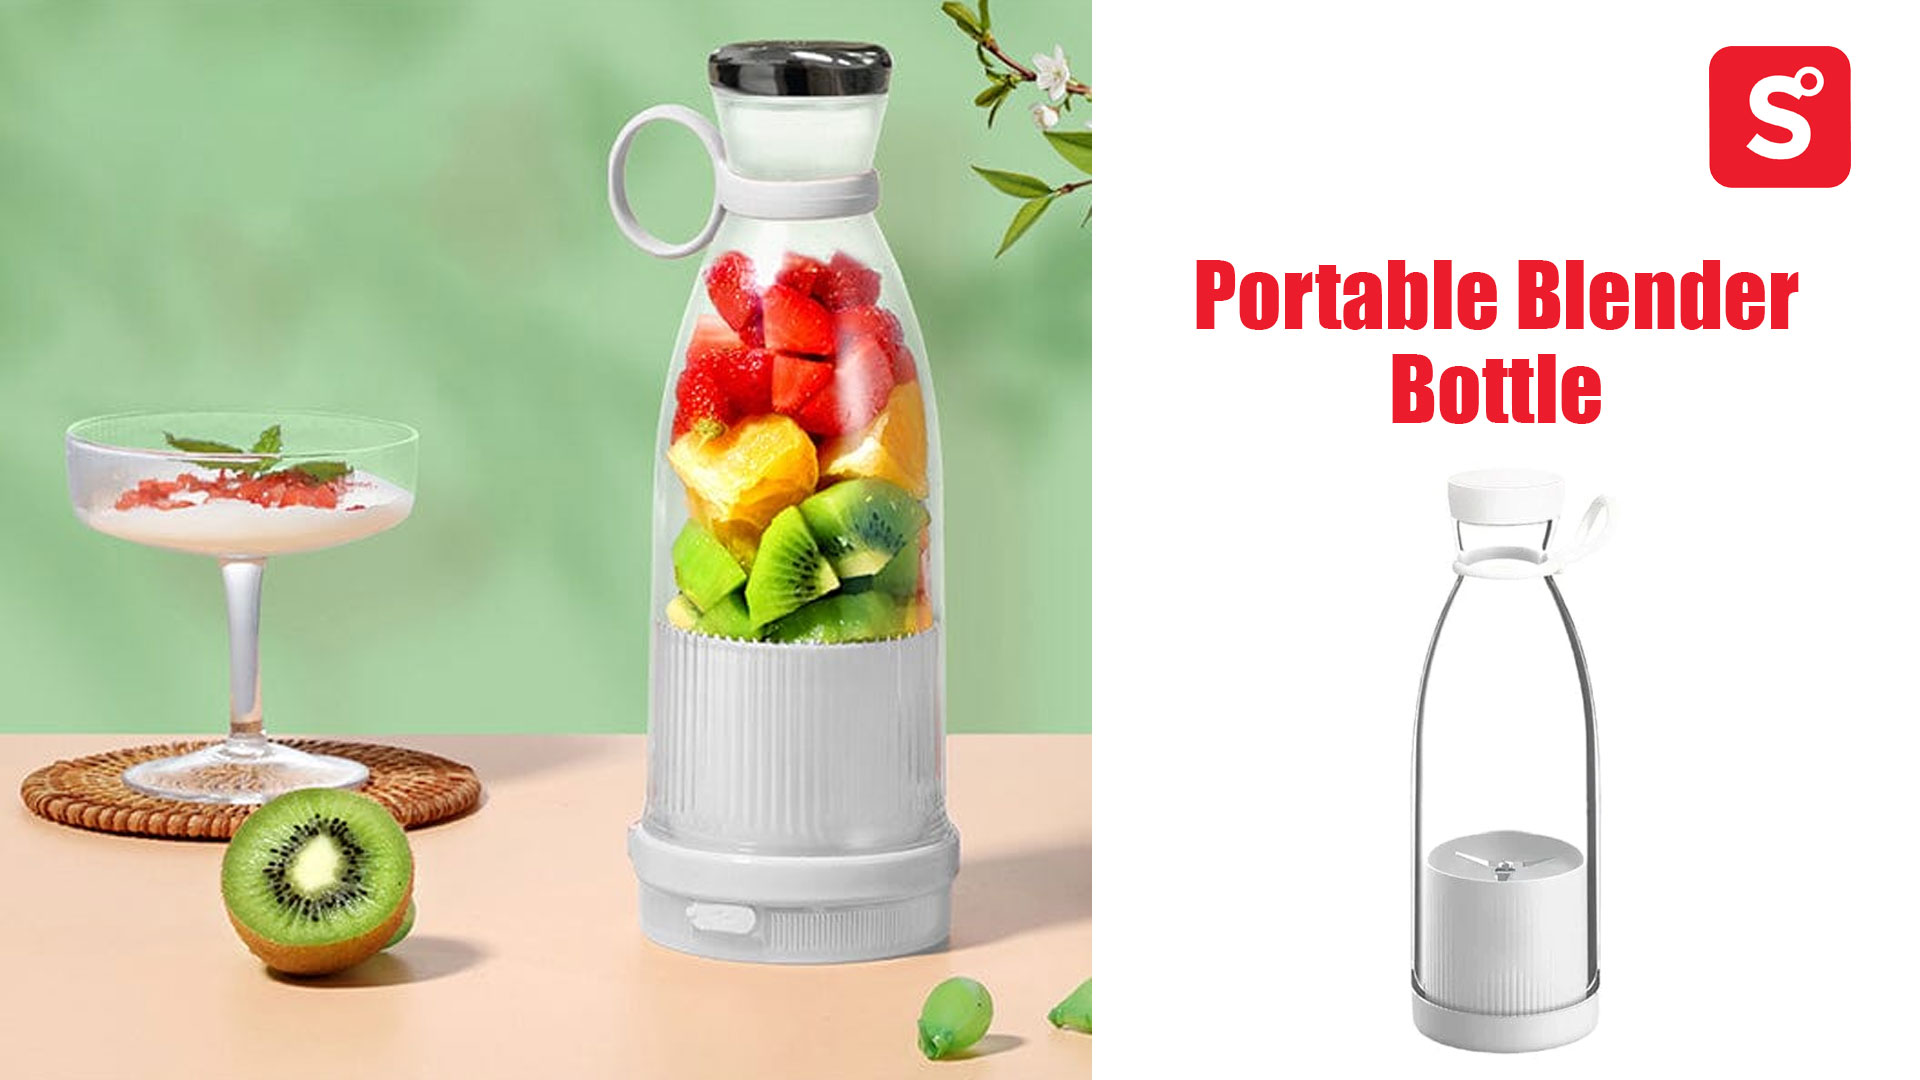 Blendilla: Portable Blender Bottle